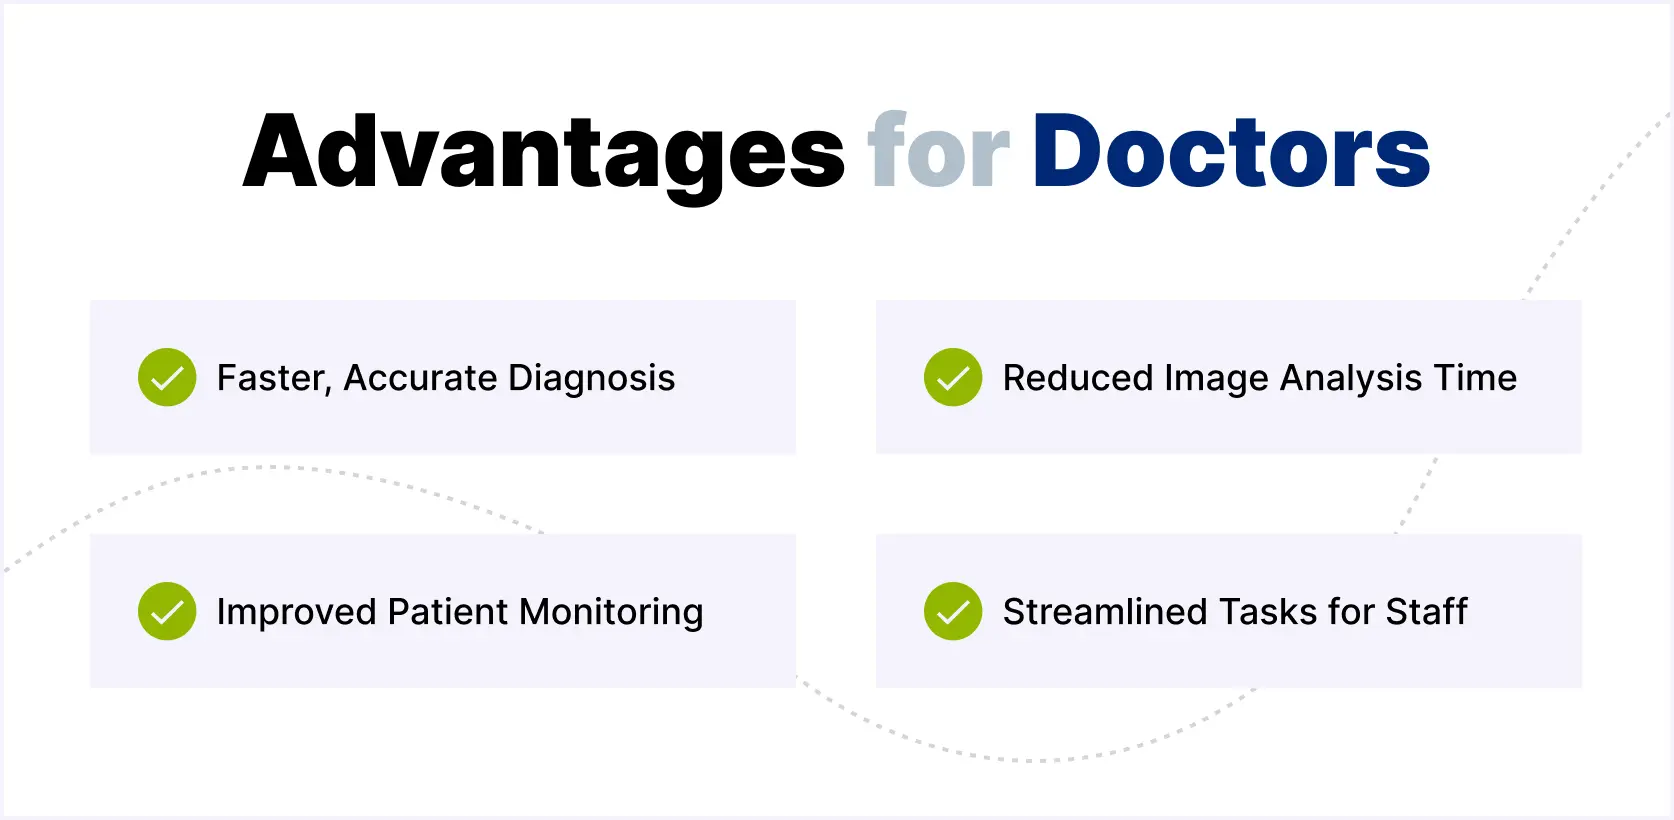 Advantages for Doctors